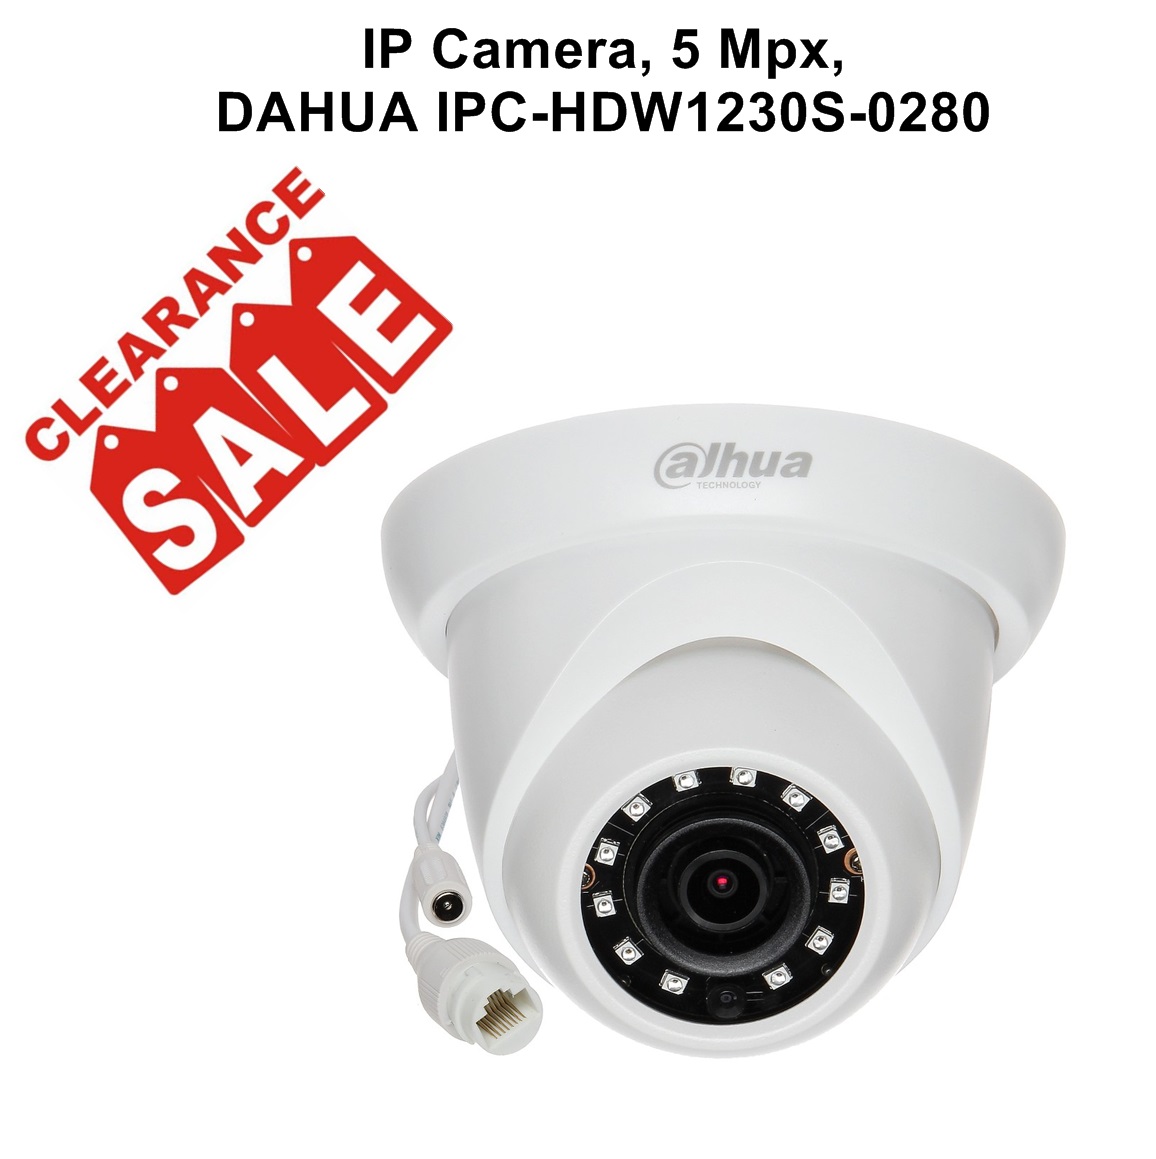 IP Camera, 5 Mpx, DAHUA IPC-HDW1230S-0280